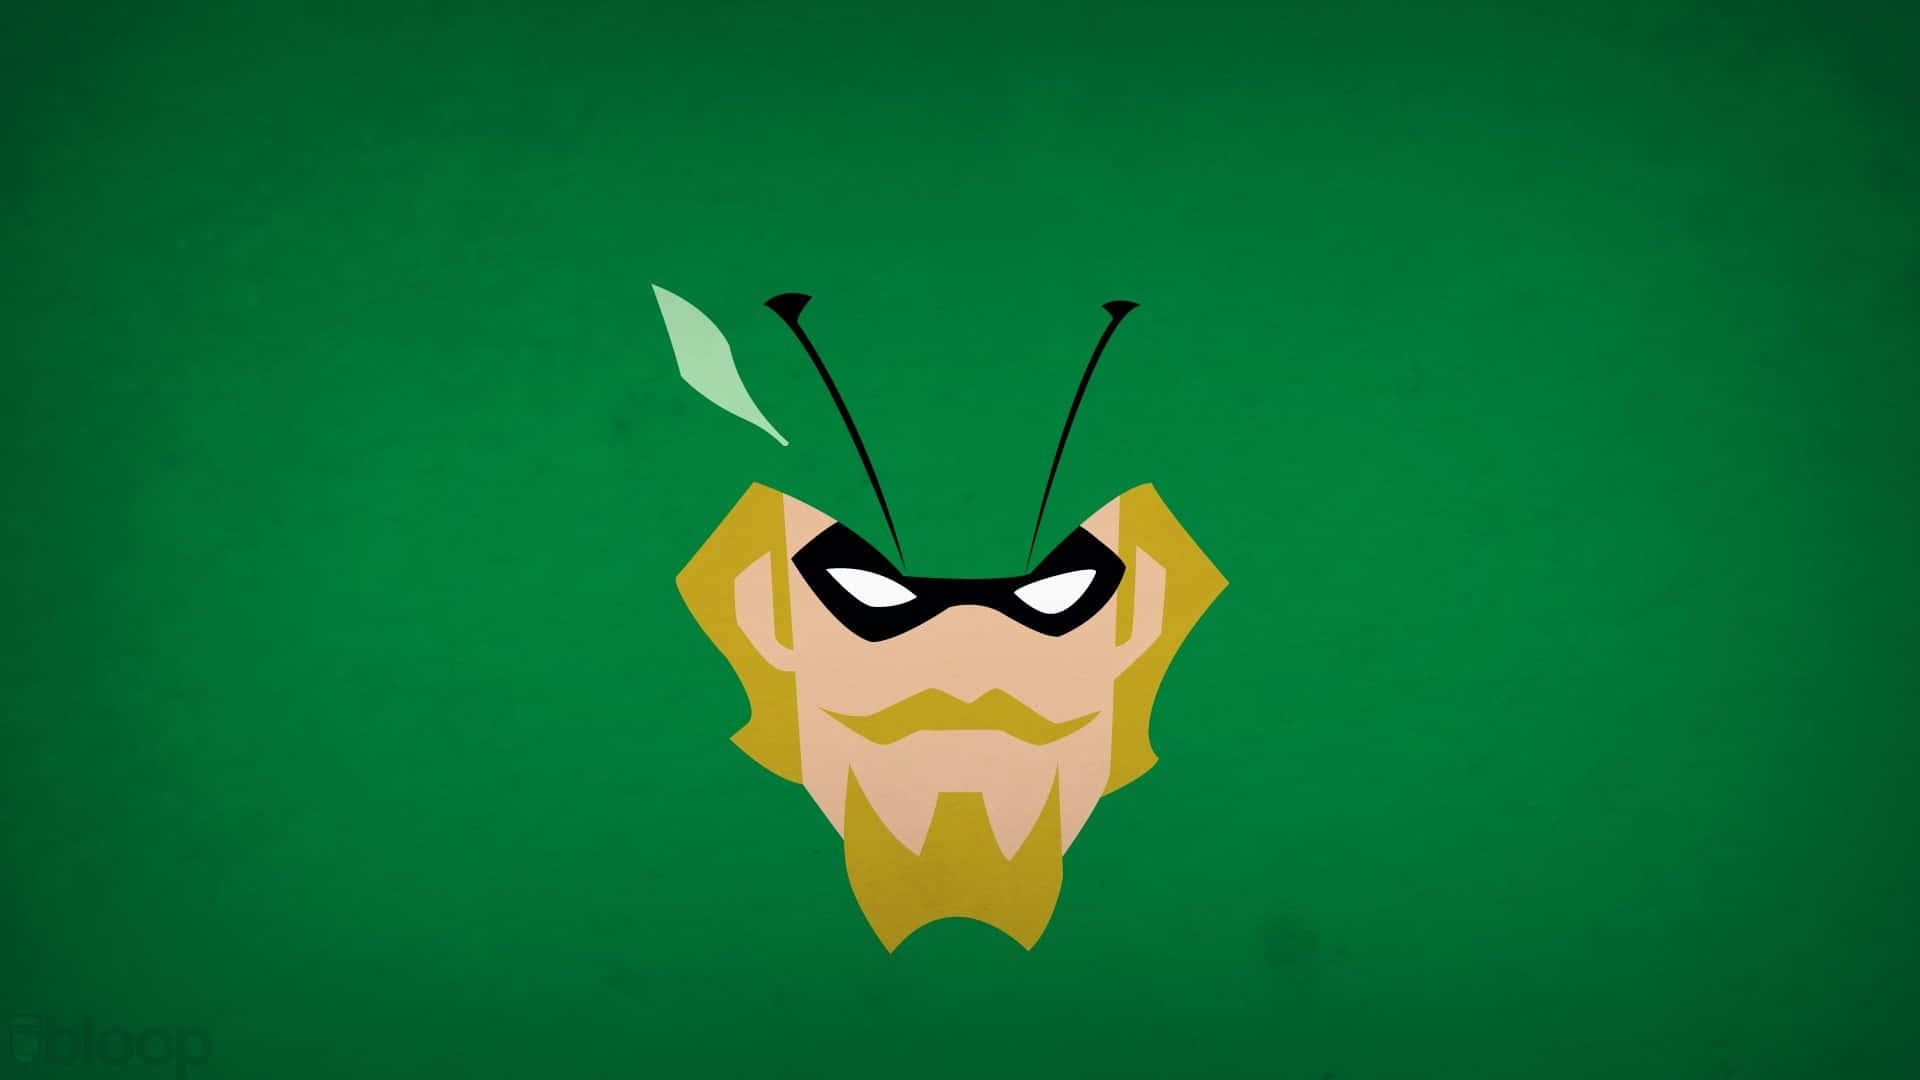 The heroic vigilante Green Arrow ready for action